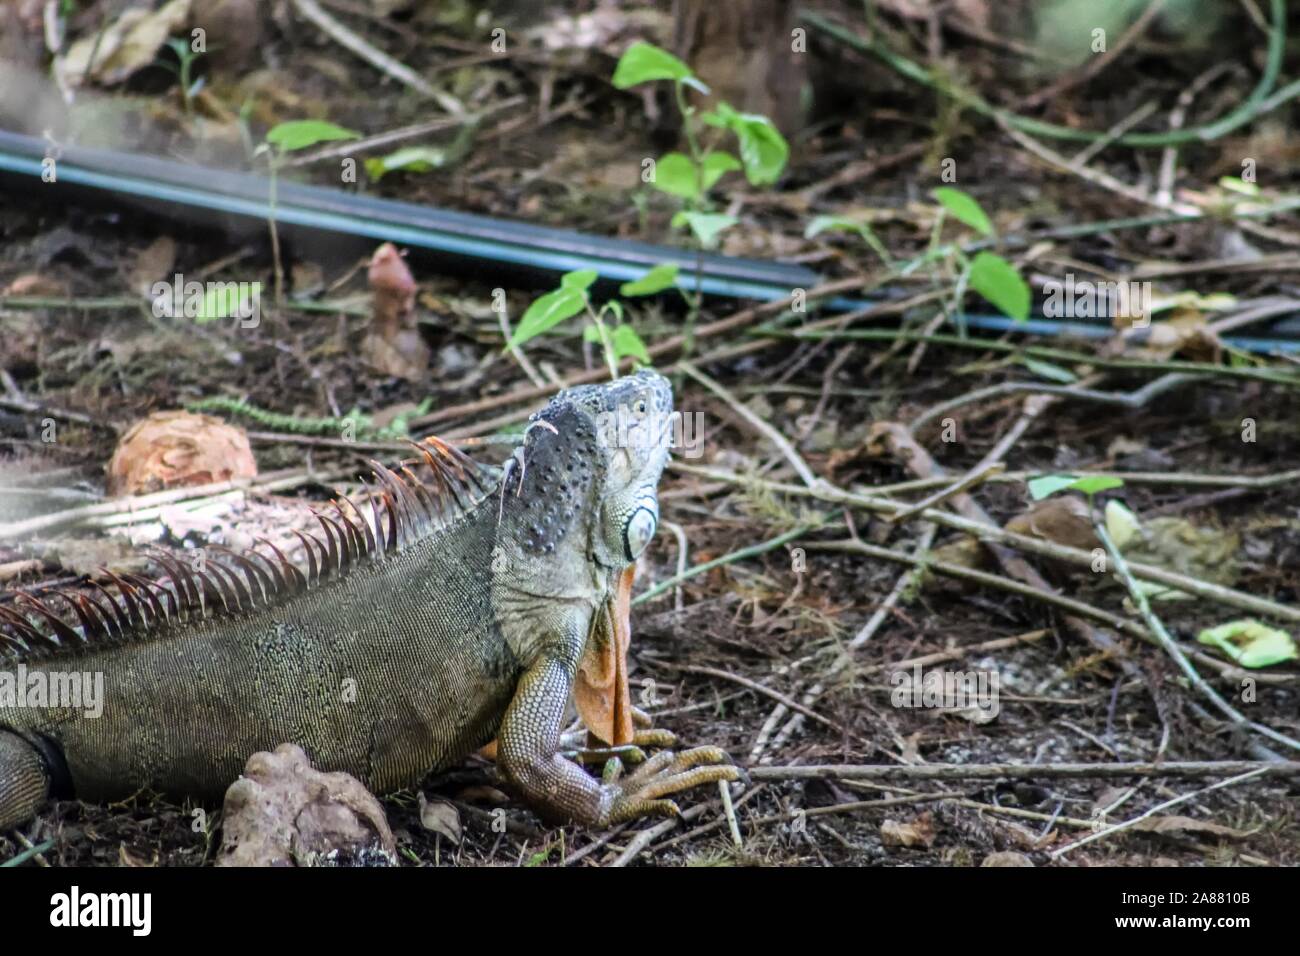 Oleta River State Park in Miami, Florida - invasive green iguanas cause damage to environment Stock Photo